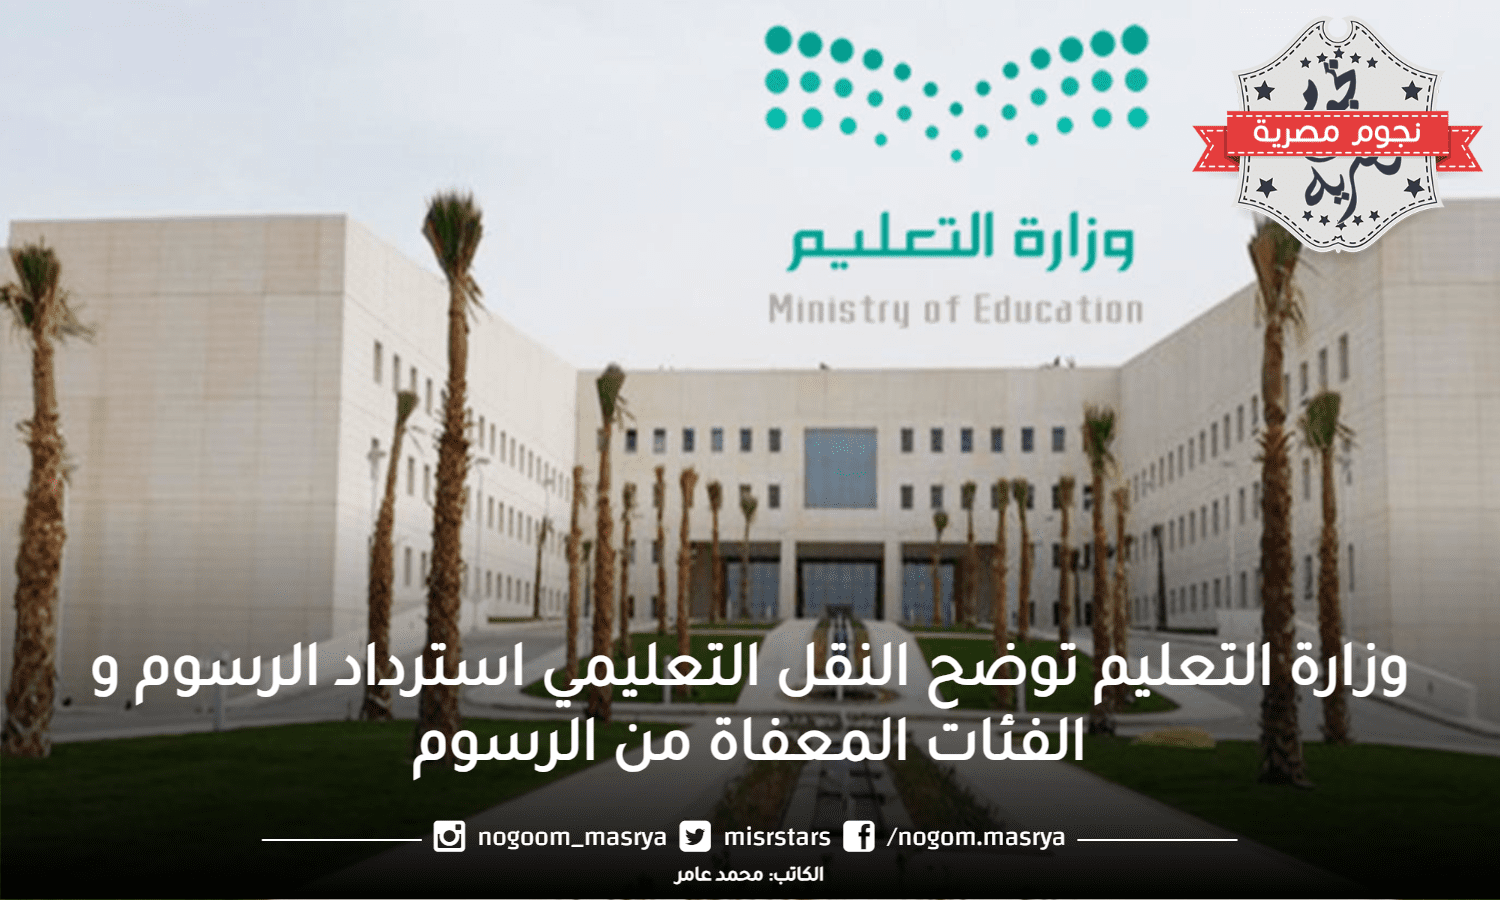 وزارة التعليم توضح النقل التعليمي استرداد الرسوم و الفئات المعفاة من الرسوم